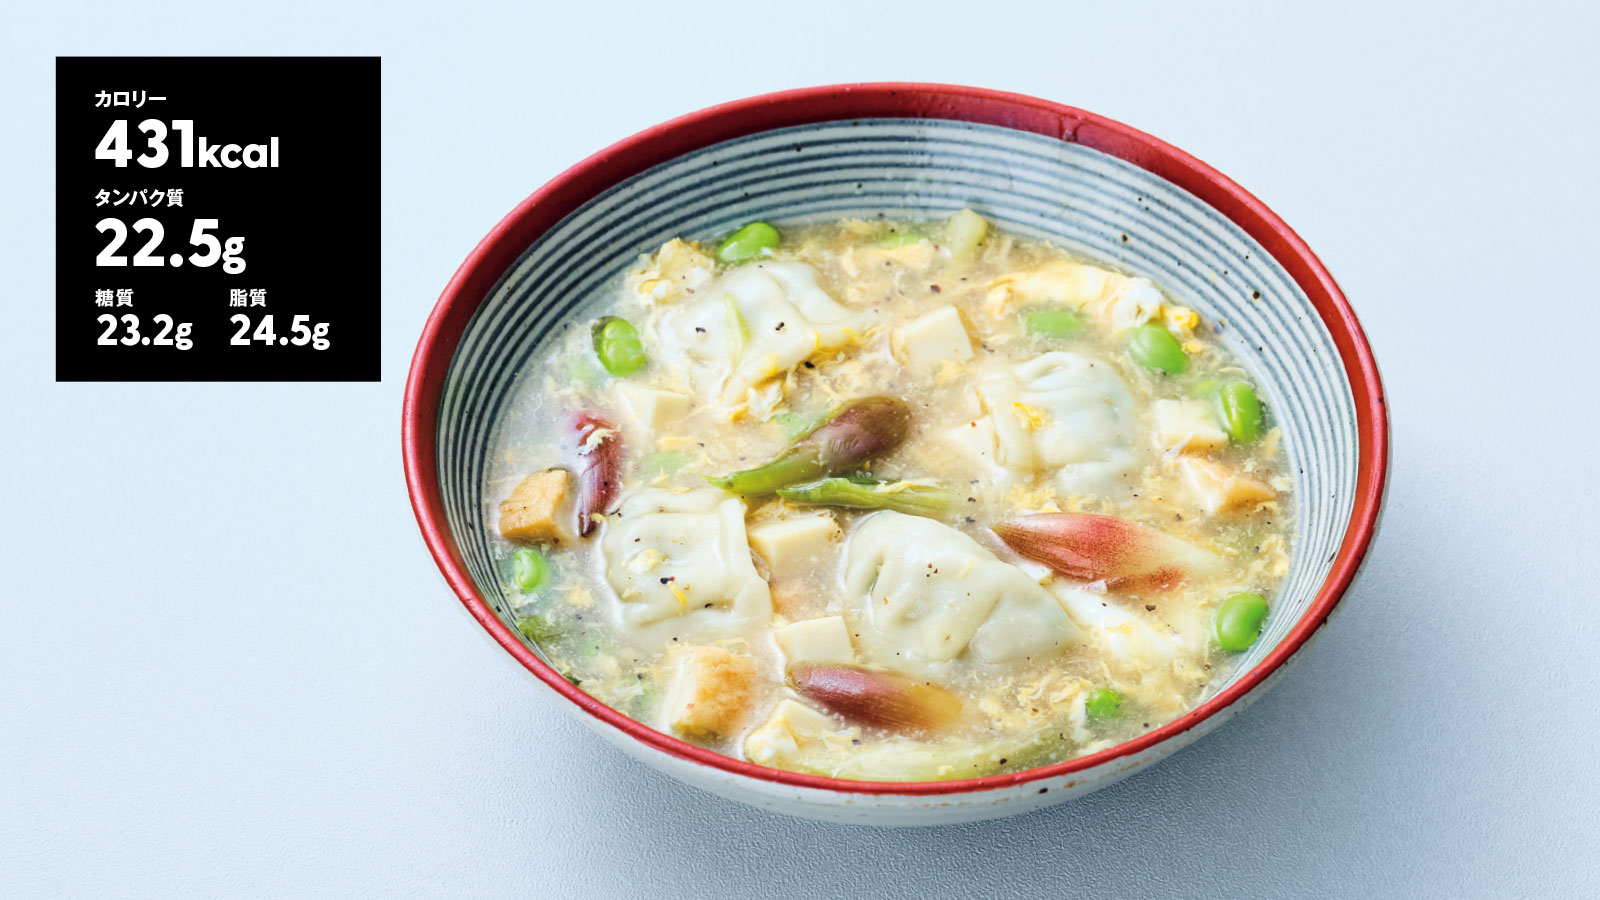 高橋善郎さん 和食料理店〈凧本店〉〈凧 HANARE〉代表 わさび風味のかき玉餃子スープ レシピ